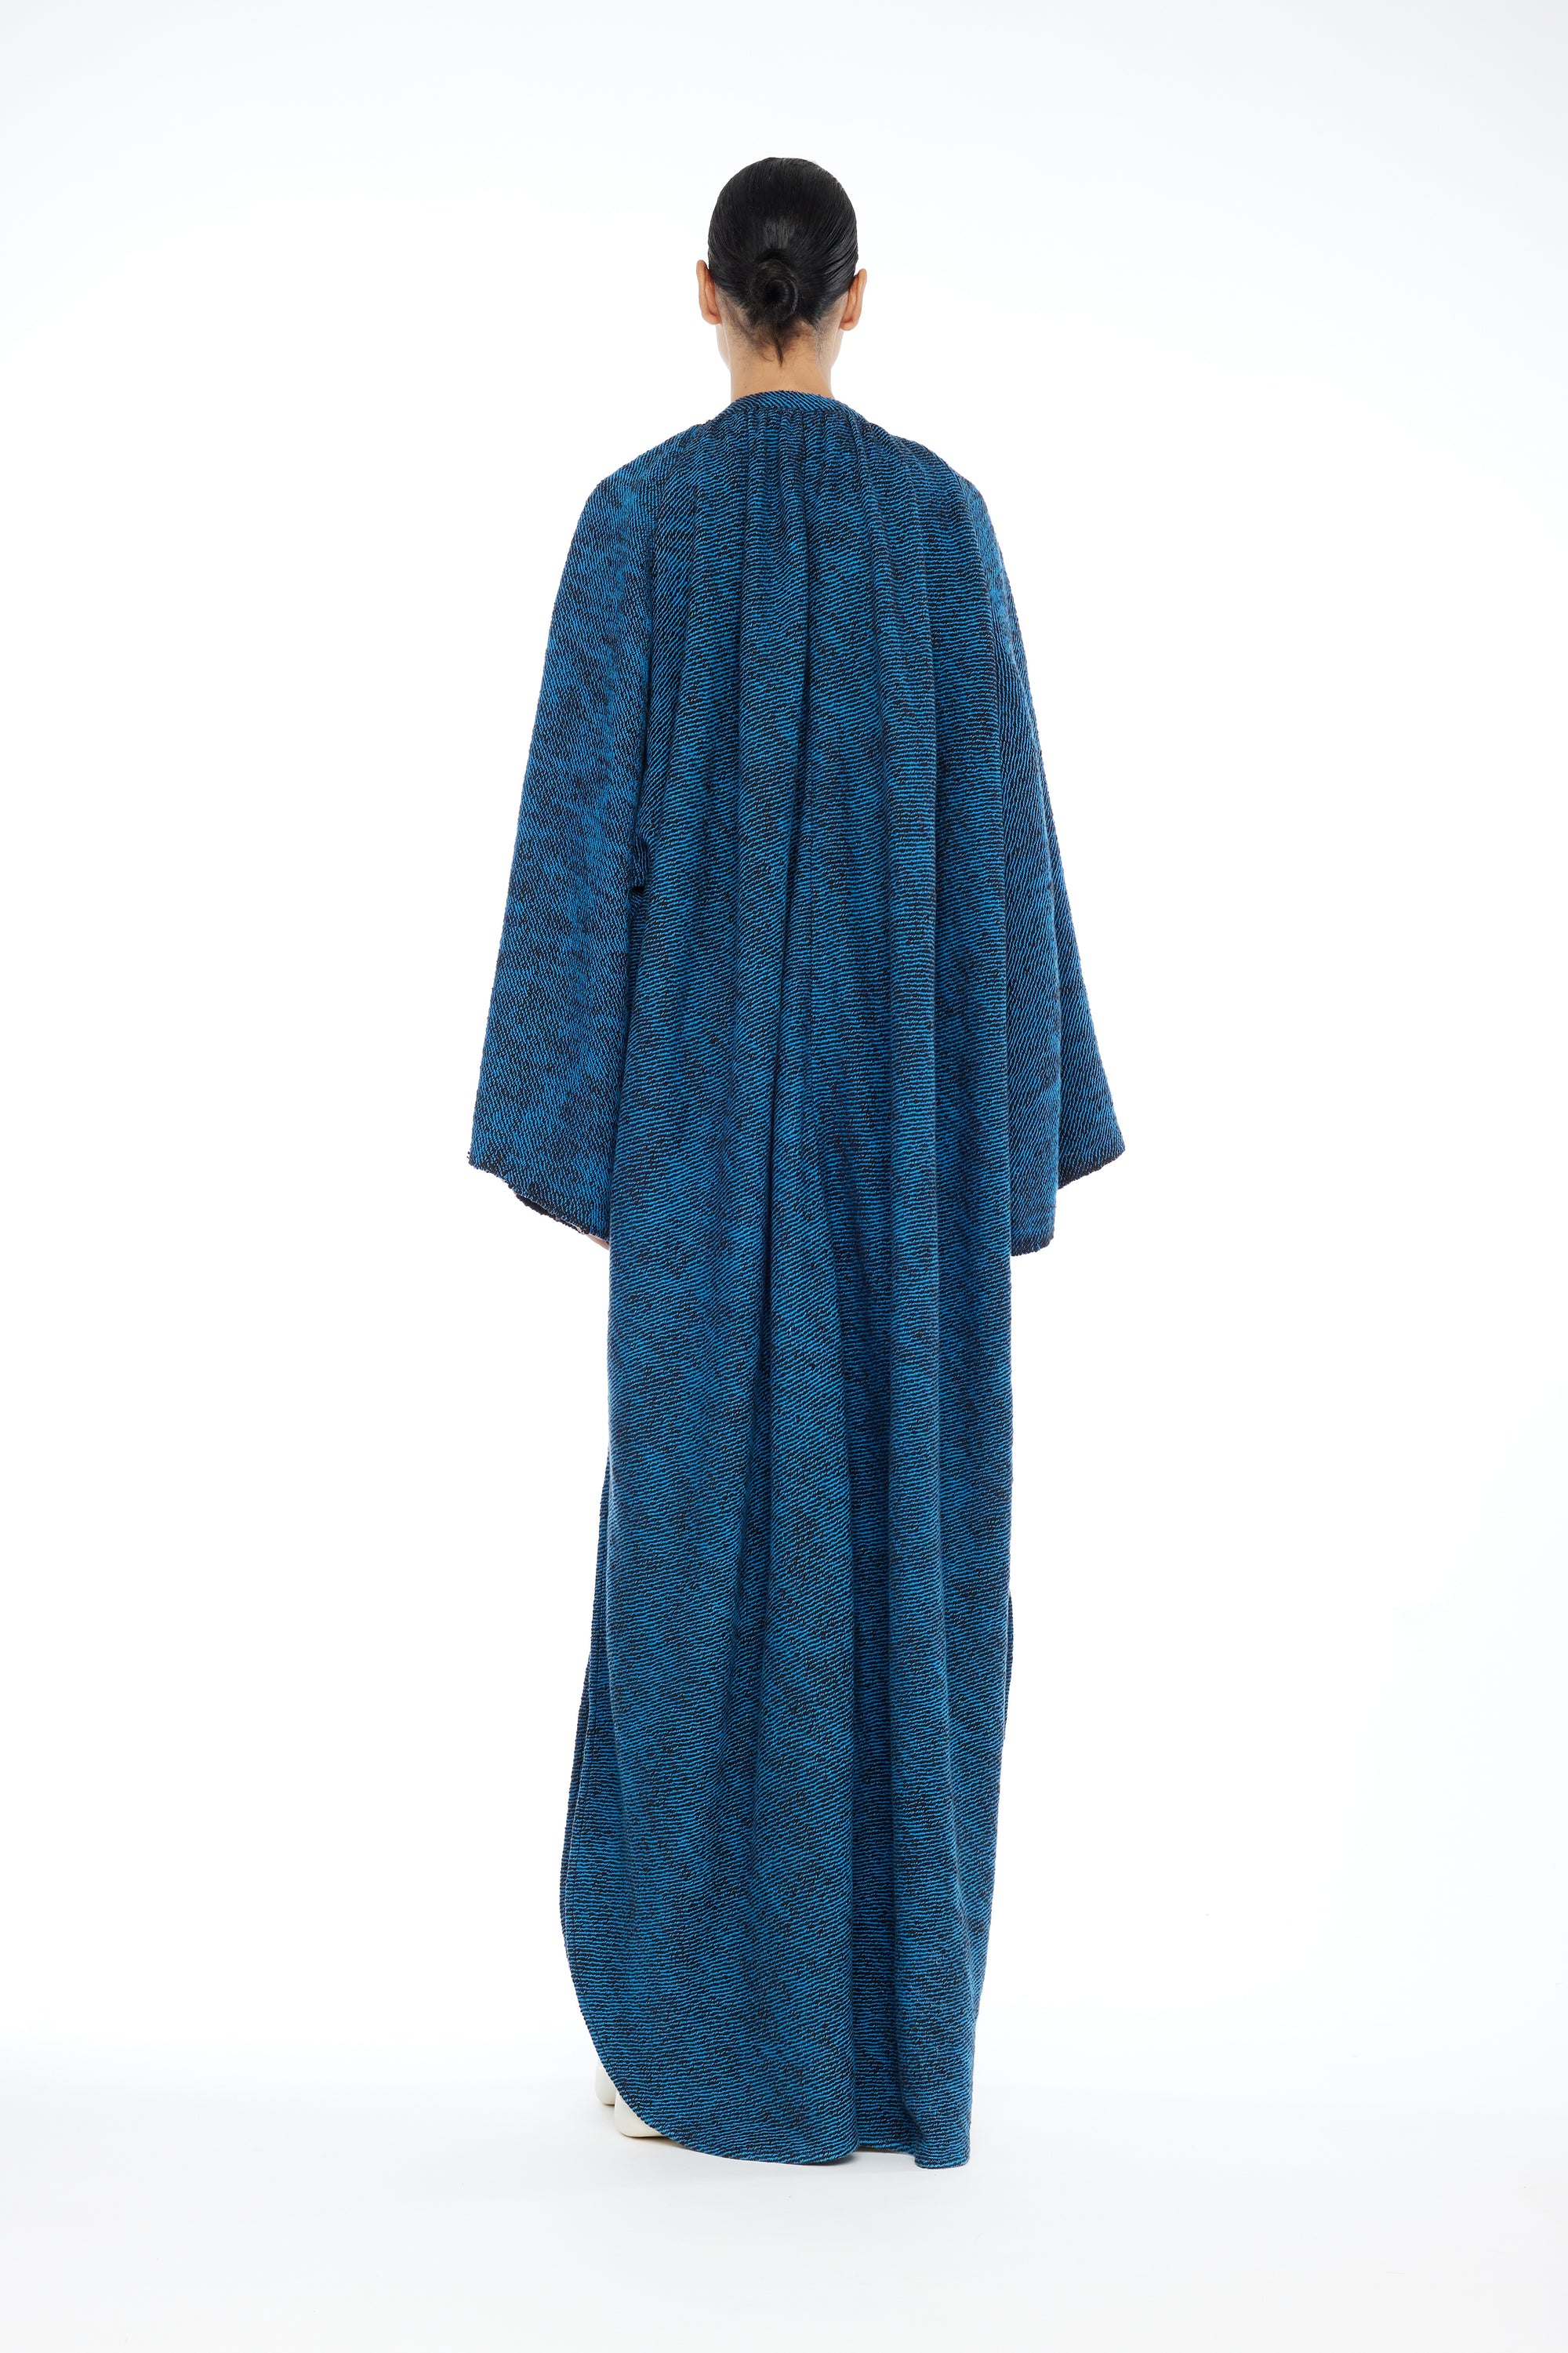 TOUAREG DRESS : BLUE BOUCLE